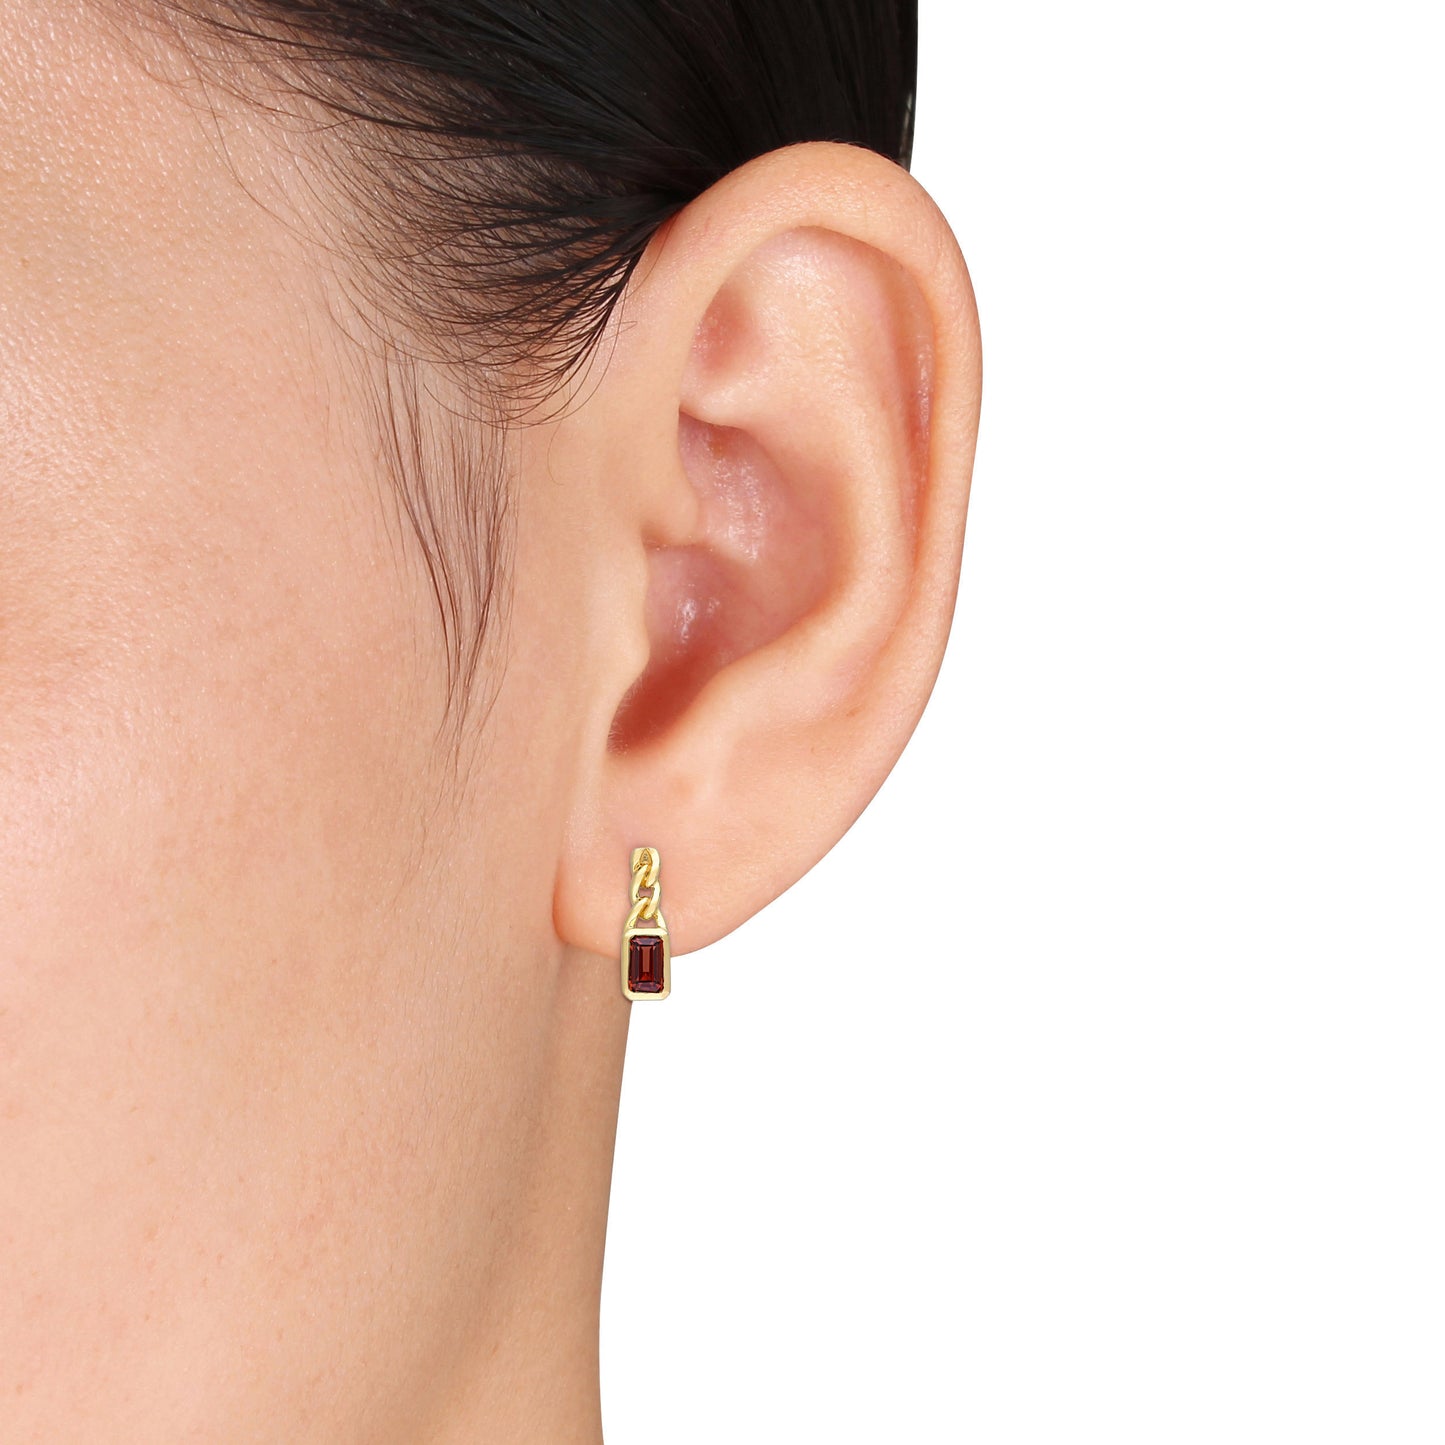 Octagon Garnet Link Drop Earrings in 10k Yellow Gold